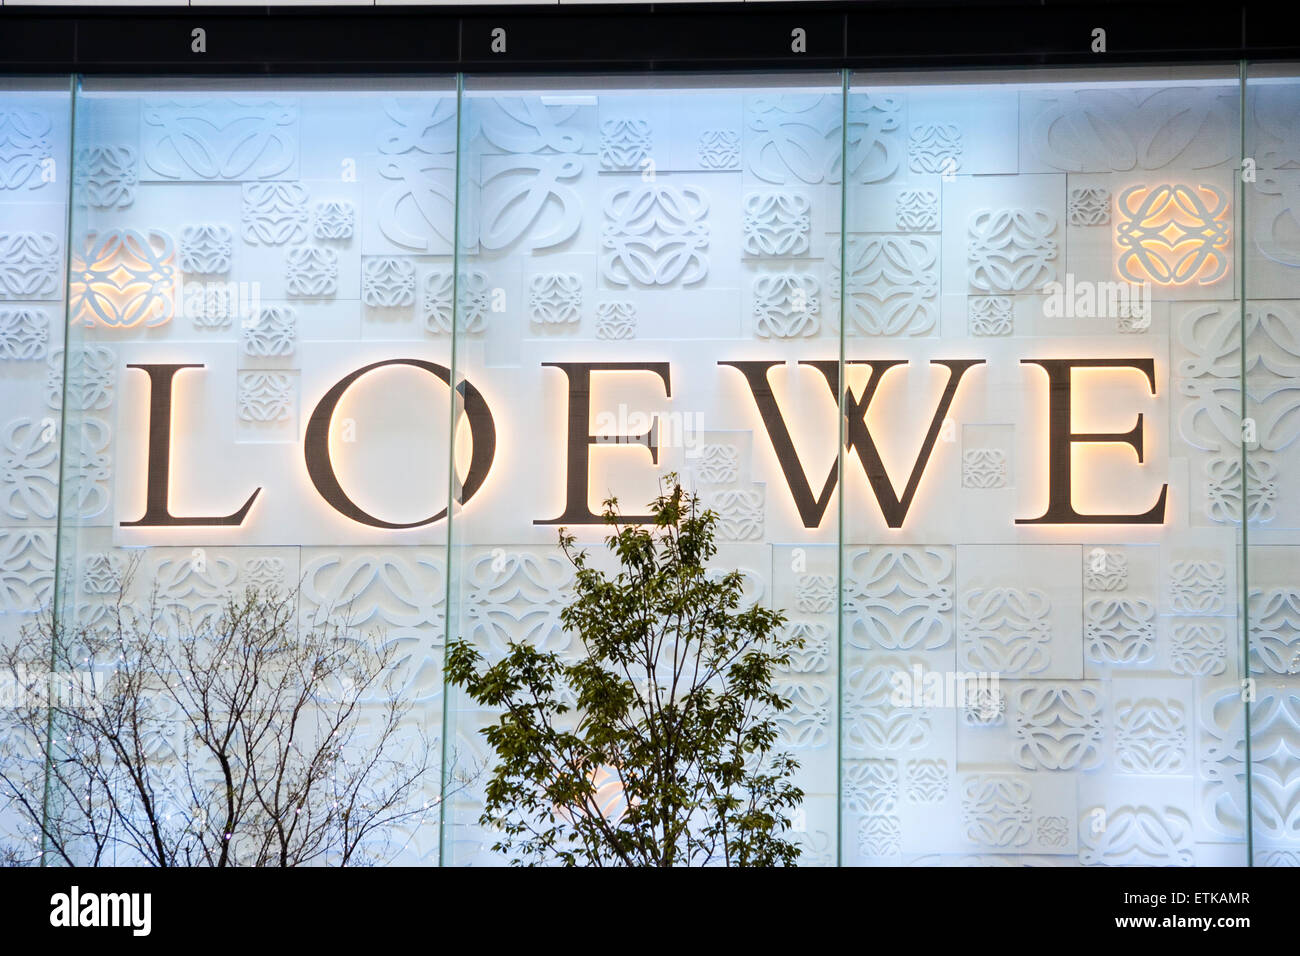 Japón, Osaka, Umeda. El elegante cartel de Marca 'Loewe' iluminado por la noche sobre la parte frontal de la tienda letras negras sobre fondo azul claro. Foto de stock